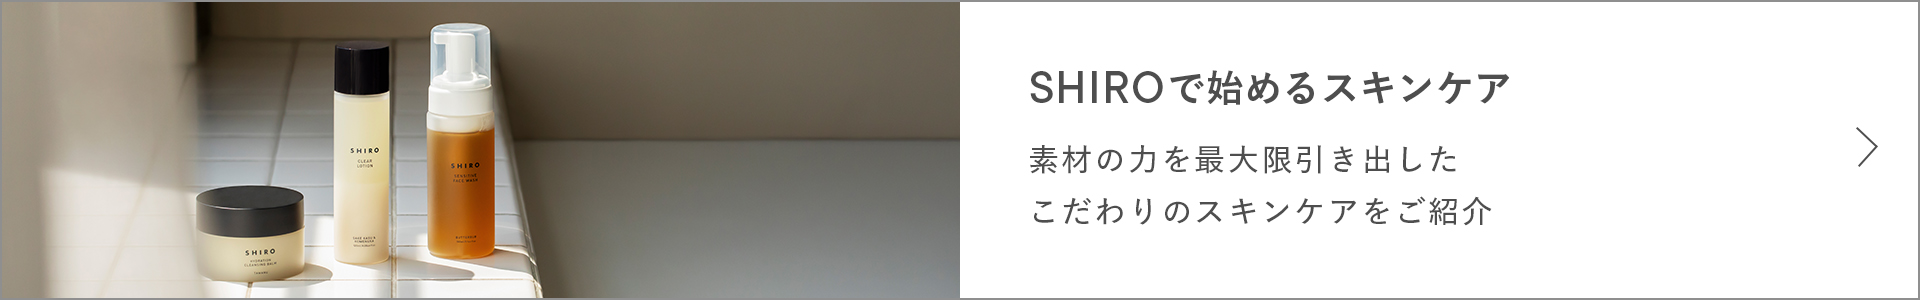 シアバタークリーム | SHIROオフィシャルサイト